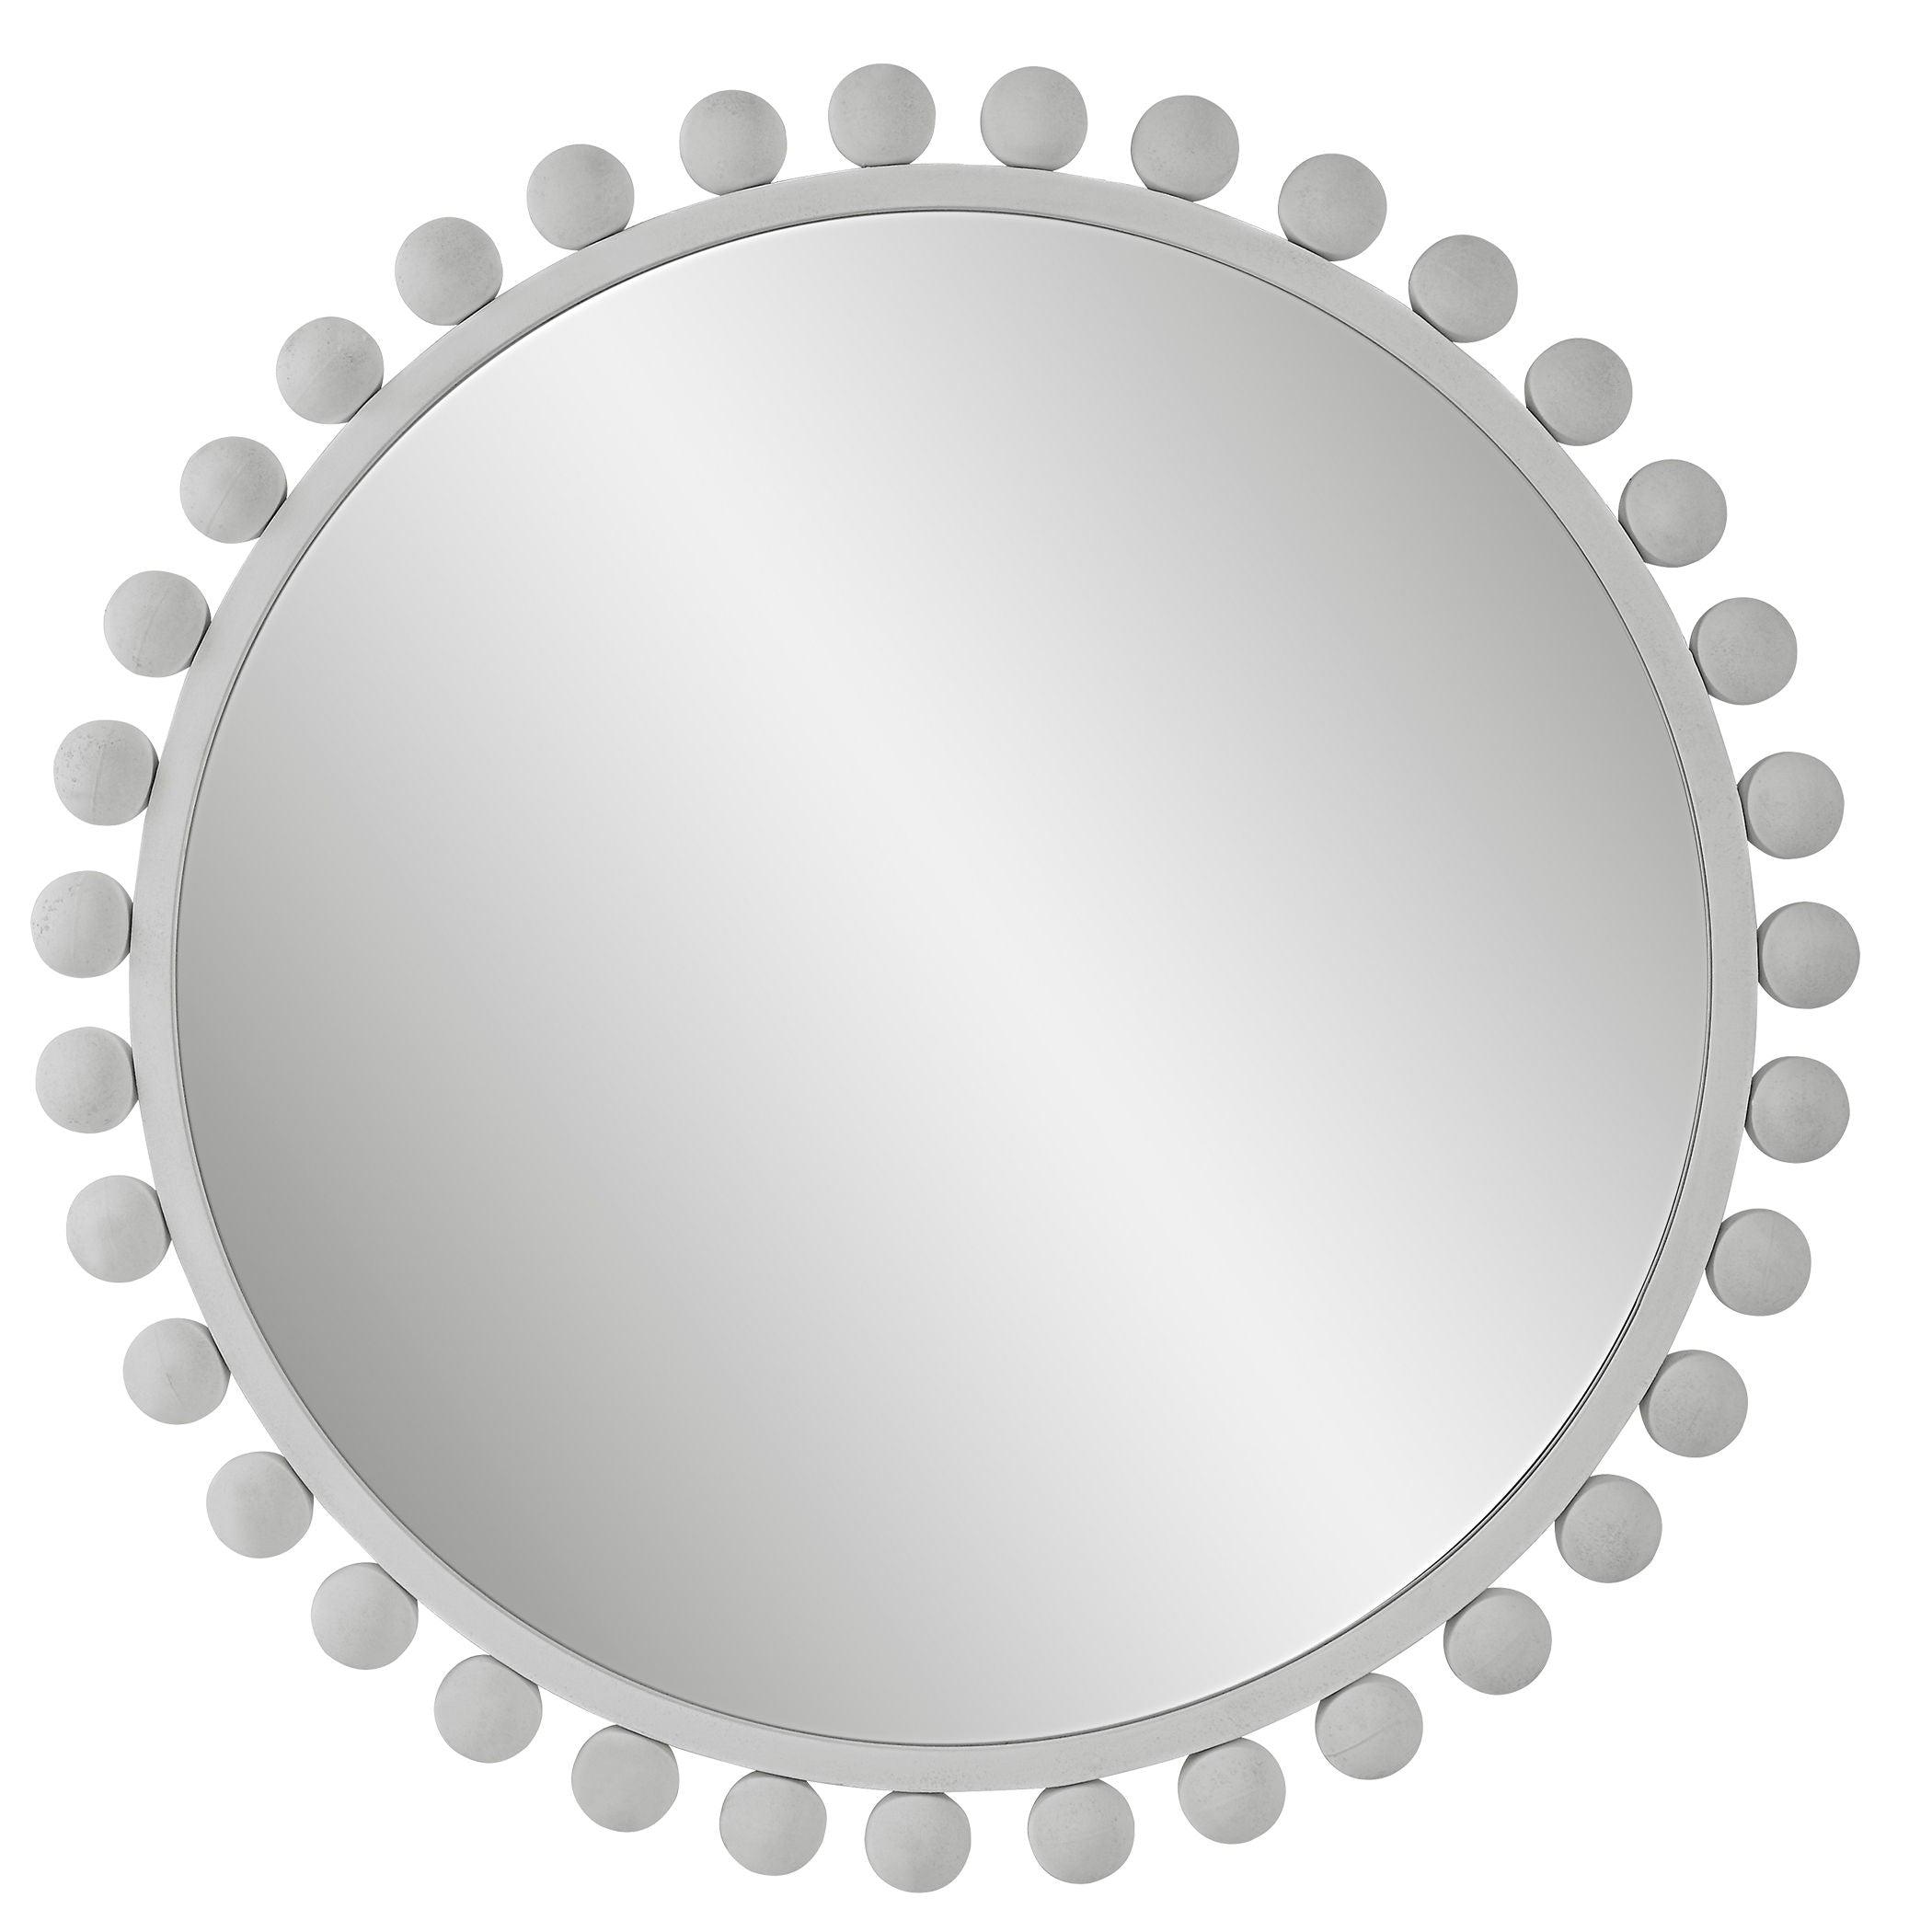 Cyra - Round Mirror - White